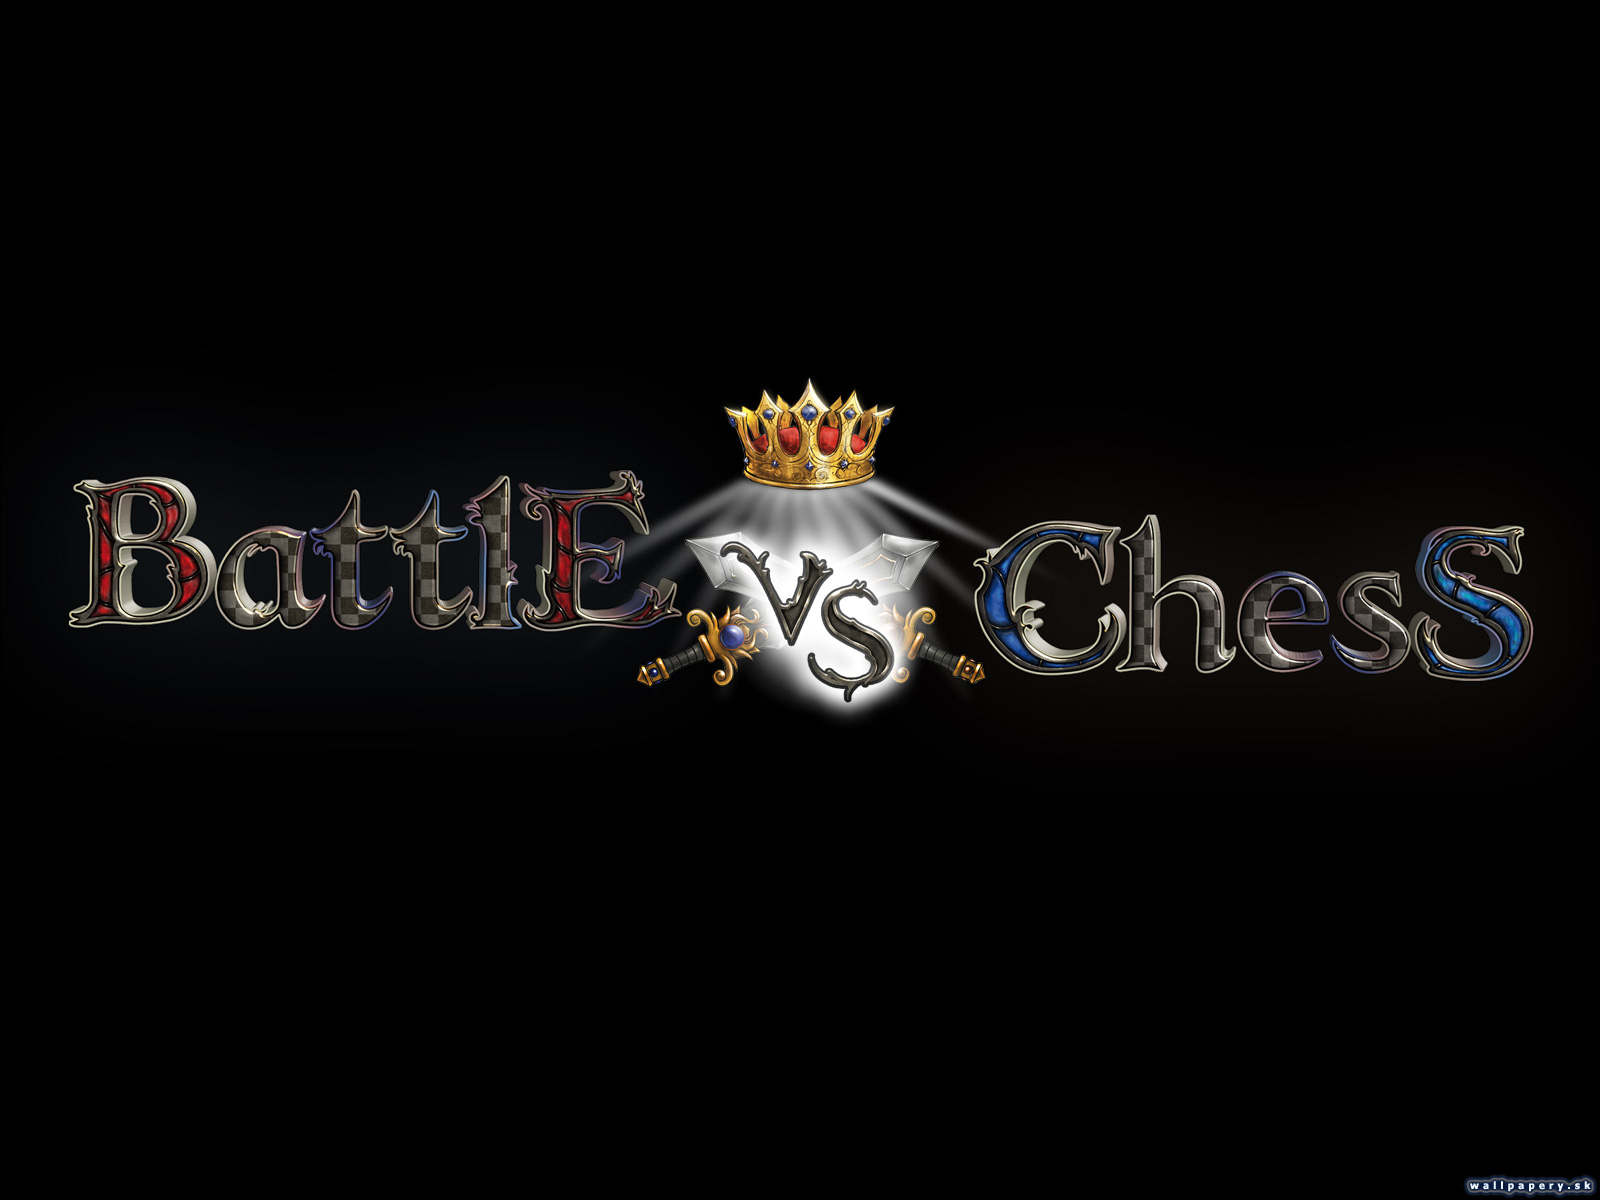 Battle vs Chess - wallpaper 2